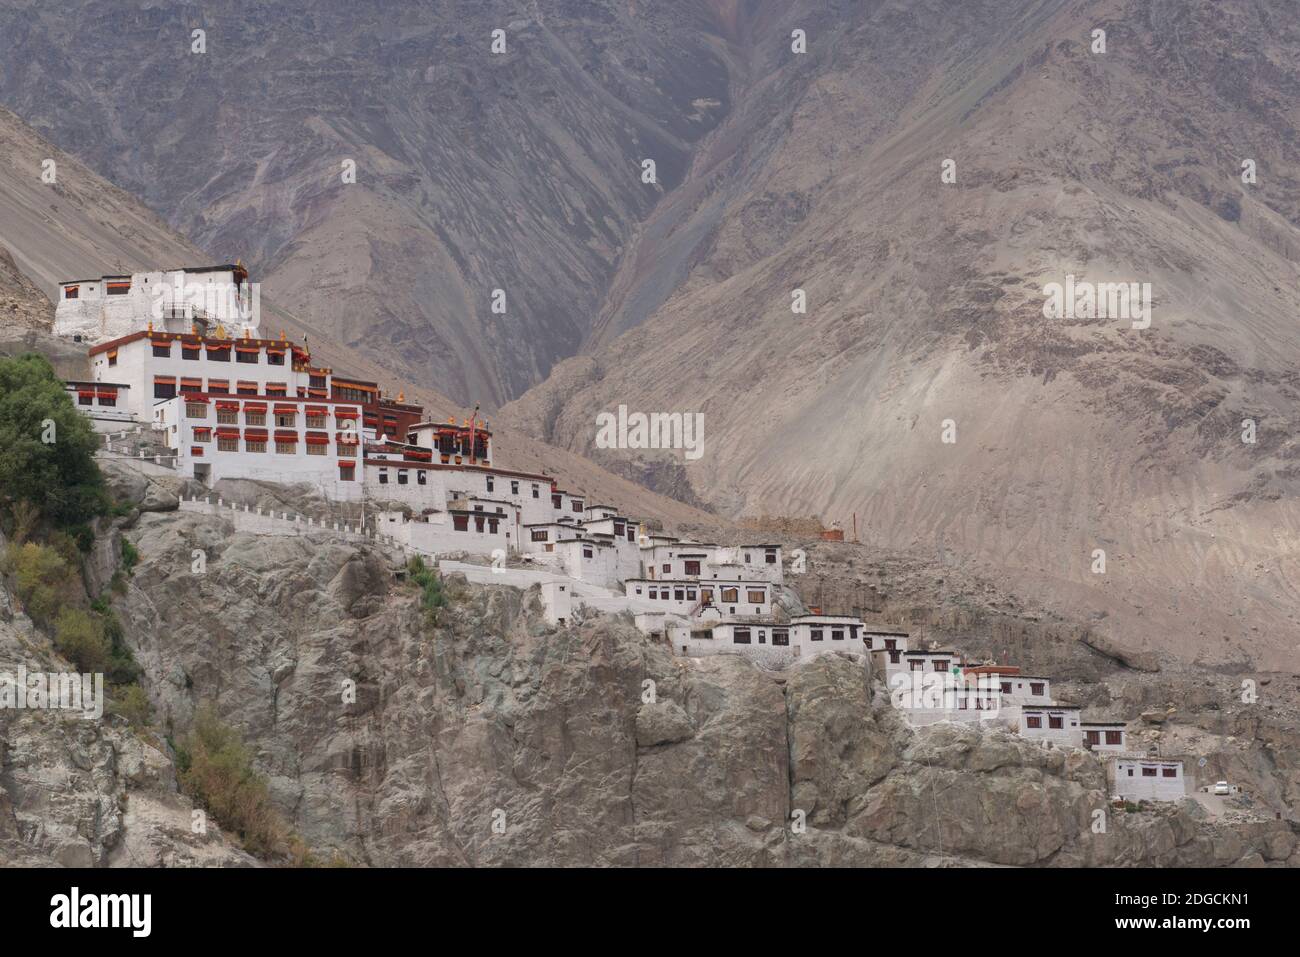 Monastère de Diskit également connu sous le nom de Deskit Gompa ou Diskit Gompa est le plus ancien et le plus grand monastère bouddhiste de la vallée de Nubra. Il appartient à la secte Gelugpa du bouddhisme tibétain. Ladakh, Jammu-et-Cachemire, Inde Banque D'Images